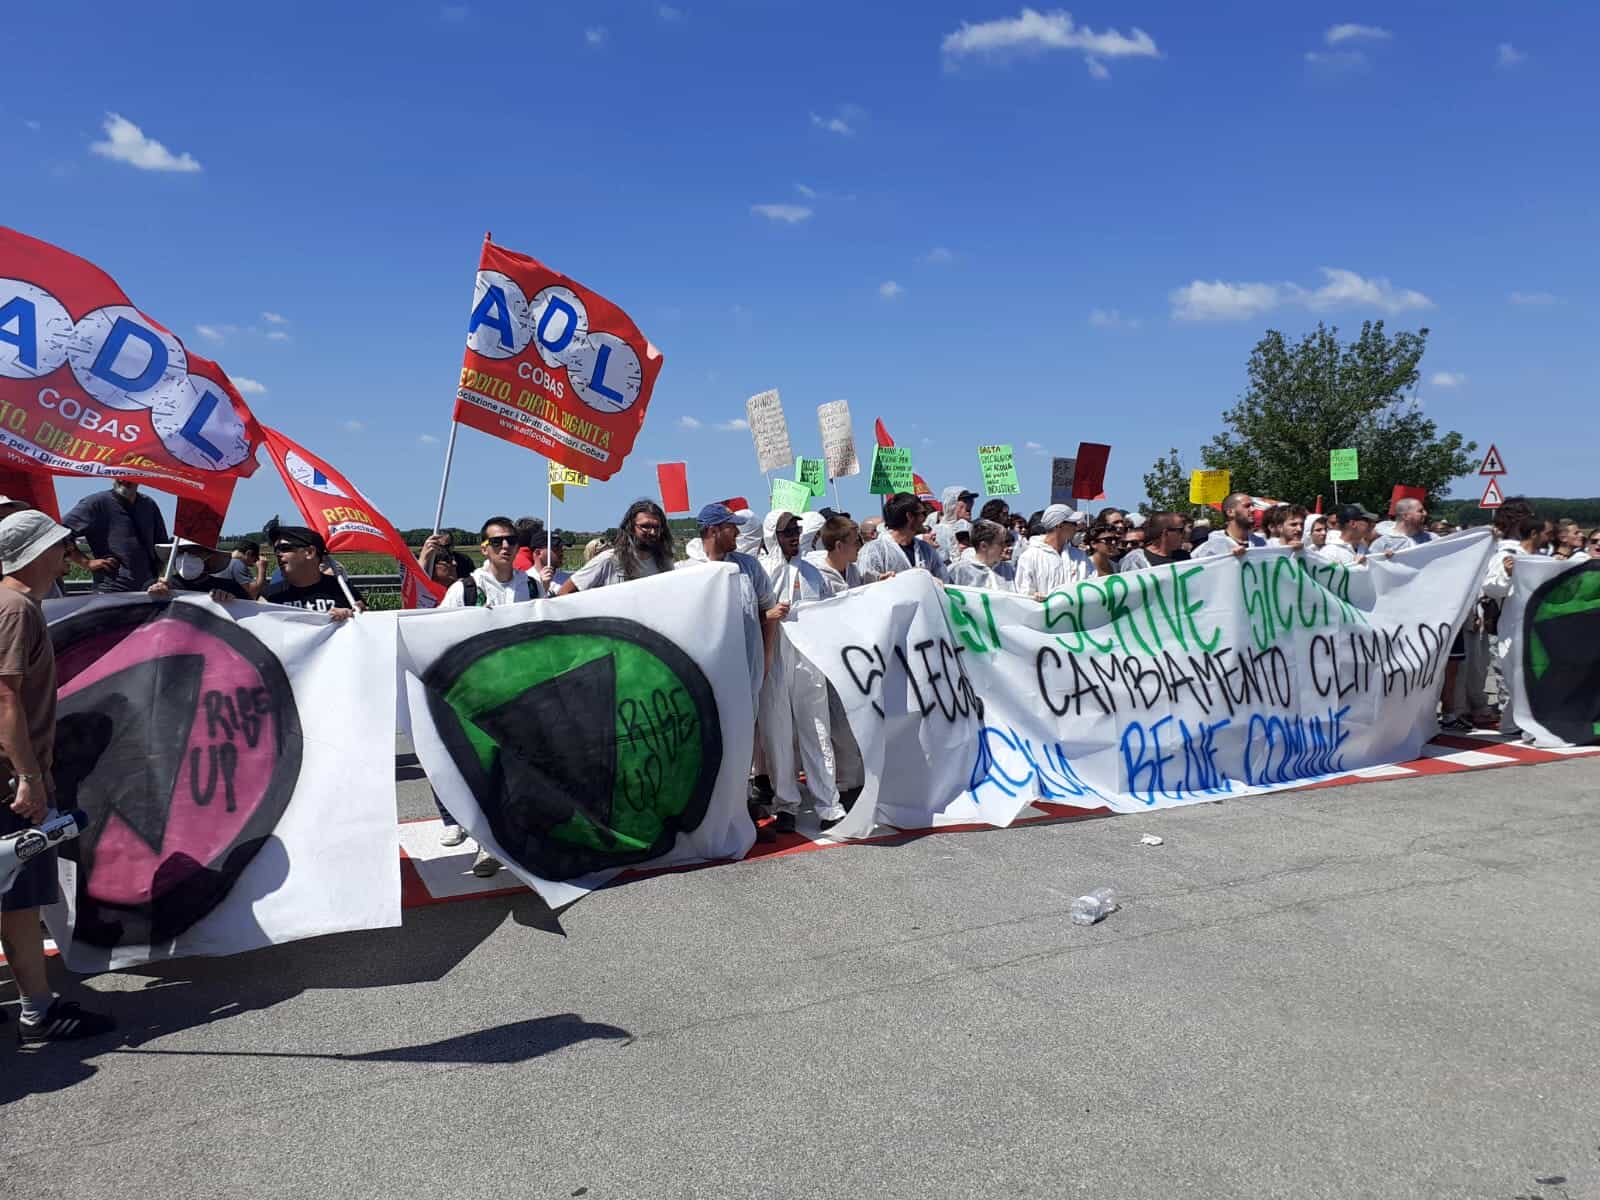 Sindacato di Base ADL Cobas - Grande partecipazione alla manifestazione per l'acqua bene comune davanti alla Coca Cola a Nogara, lanciata da ADL Cobas e Rise Up 4 Climate Justice